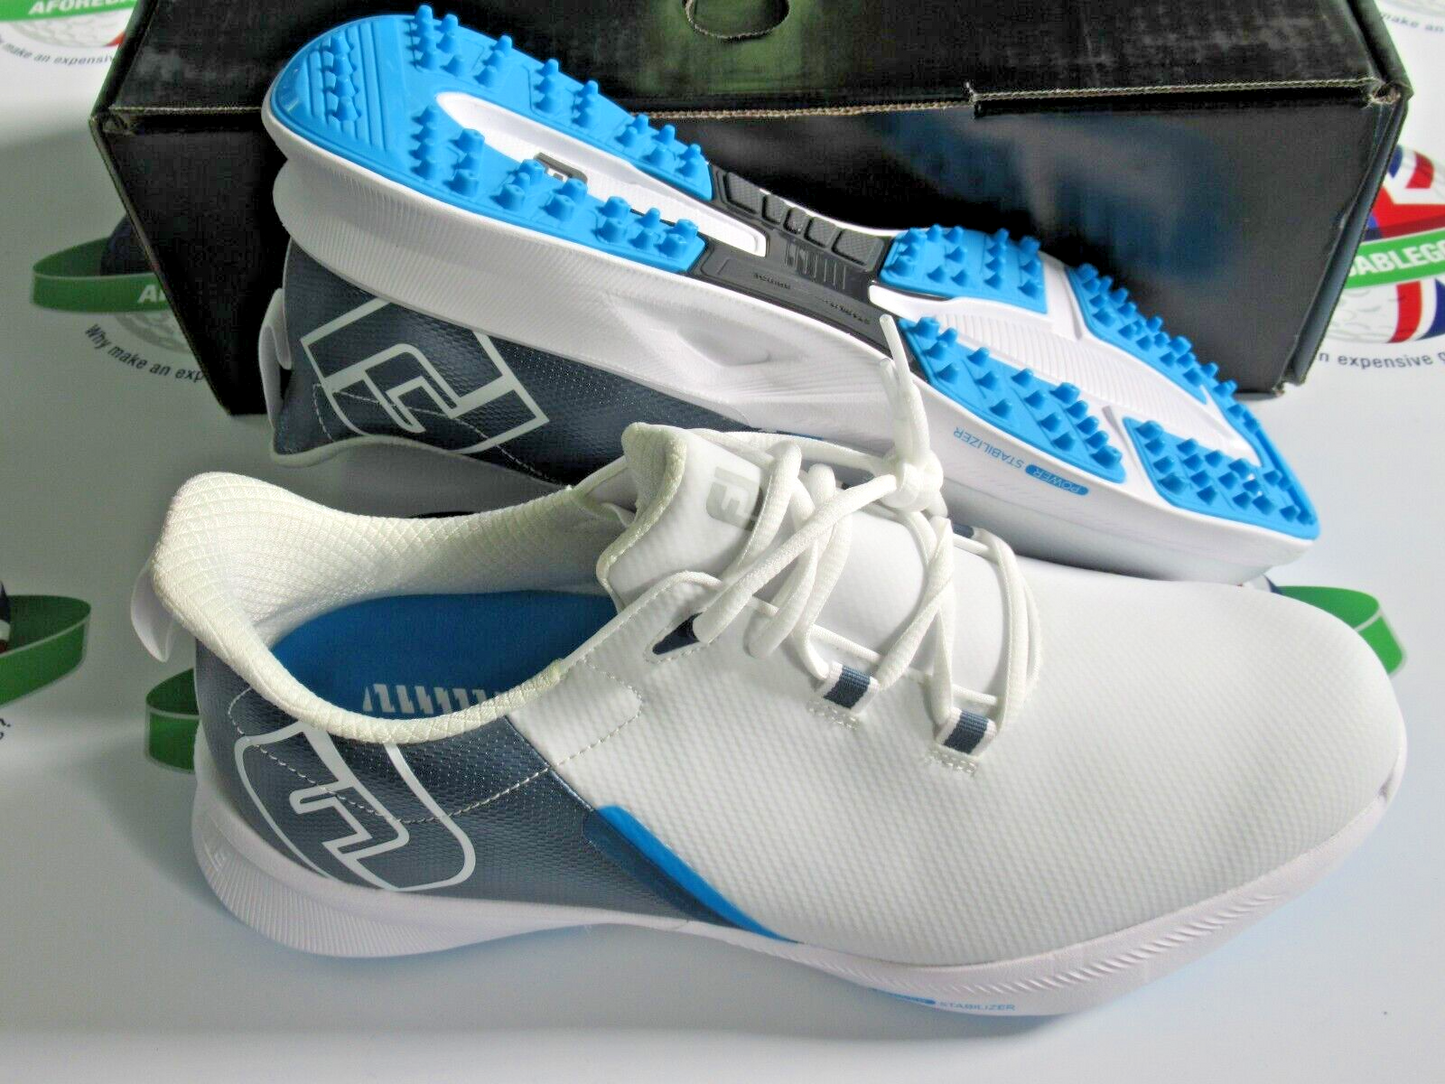 footjoy fuel sport waterproof golf shoes 55455k white/silver/blue 8 medium